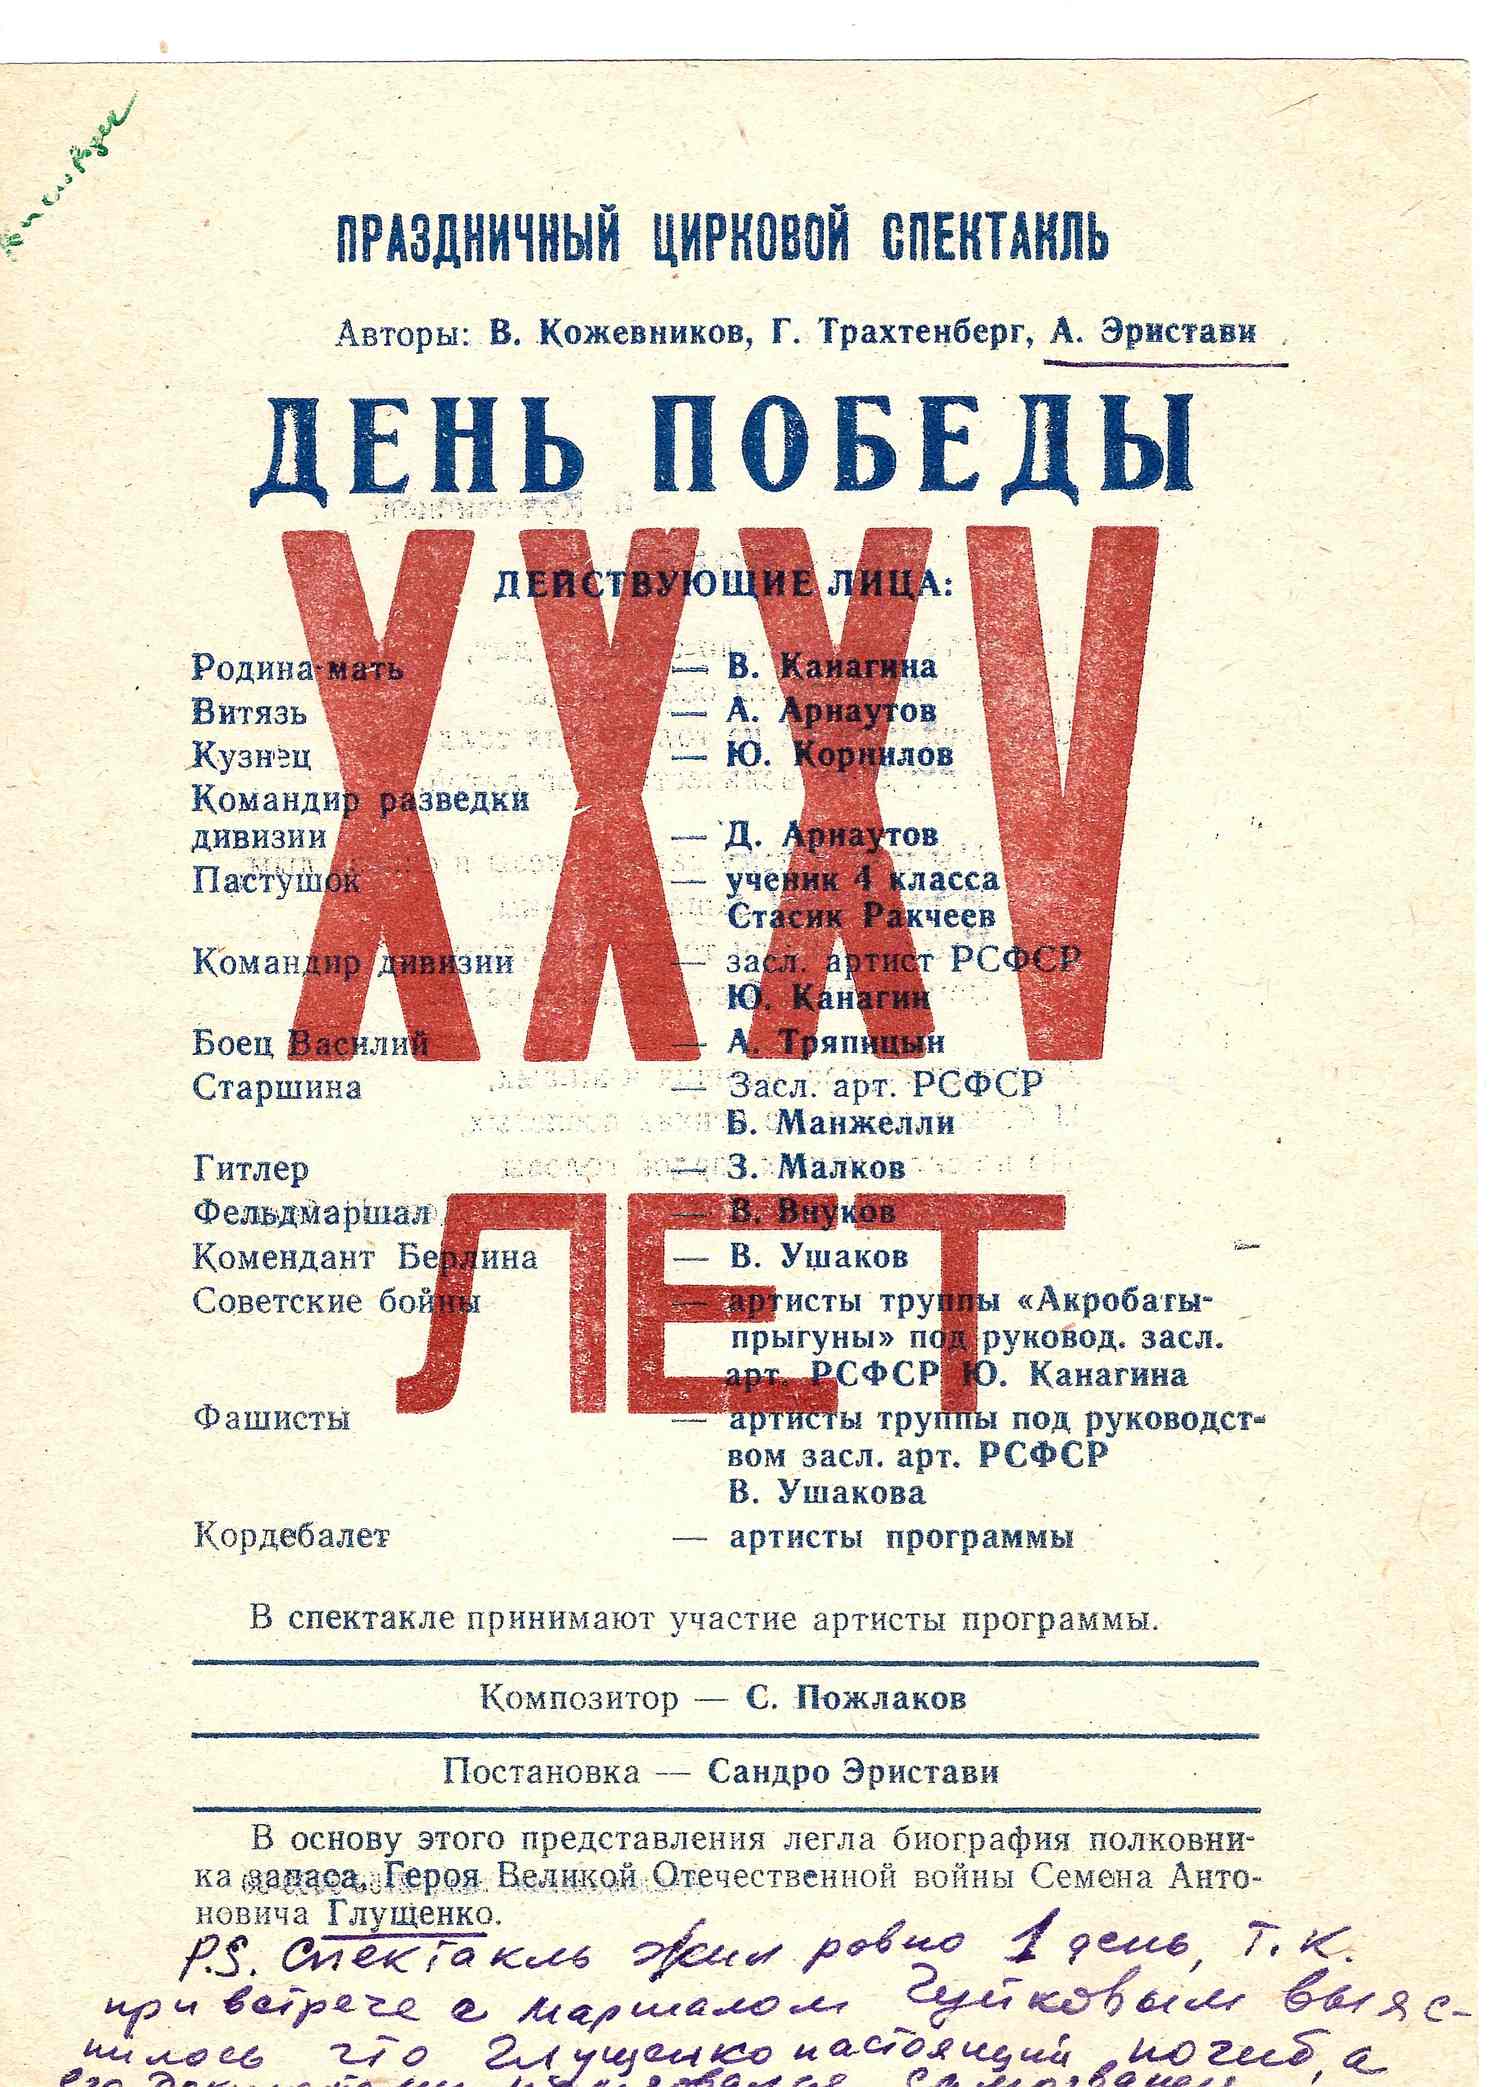 Программа спектакля Кисловодского цирка «День победы». 1980.